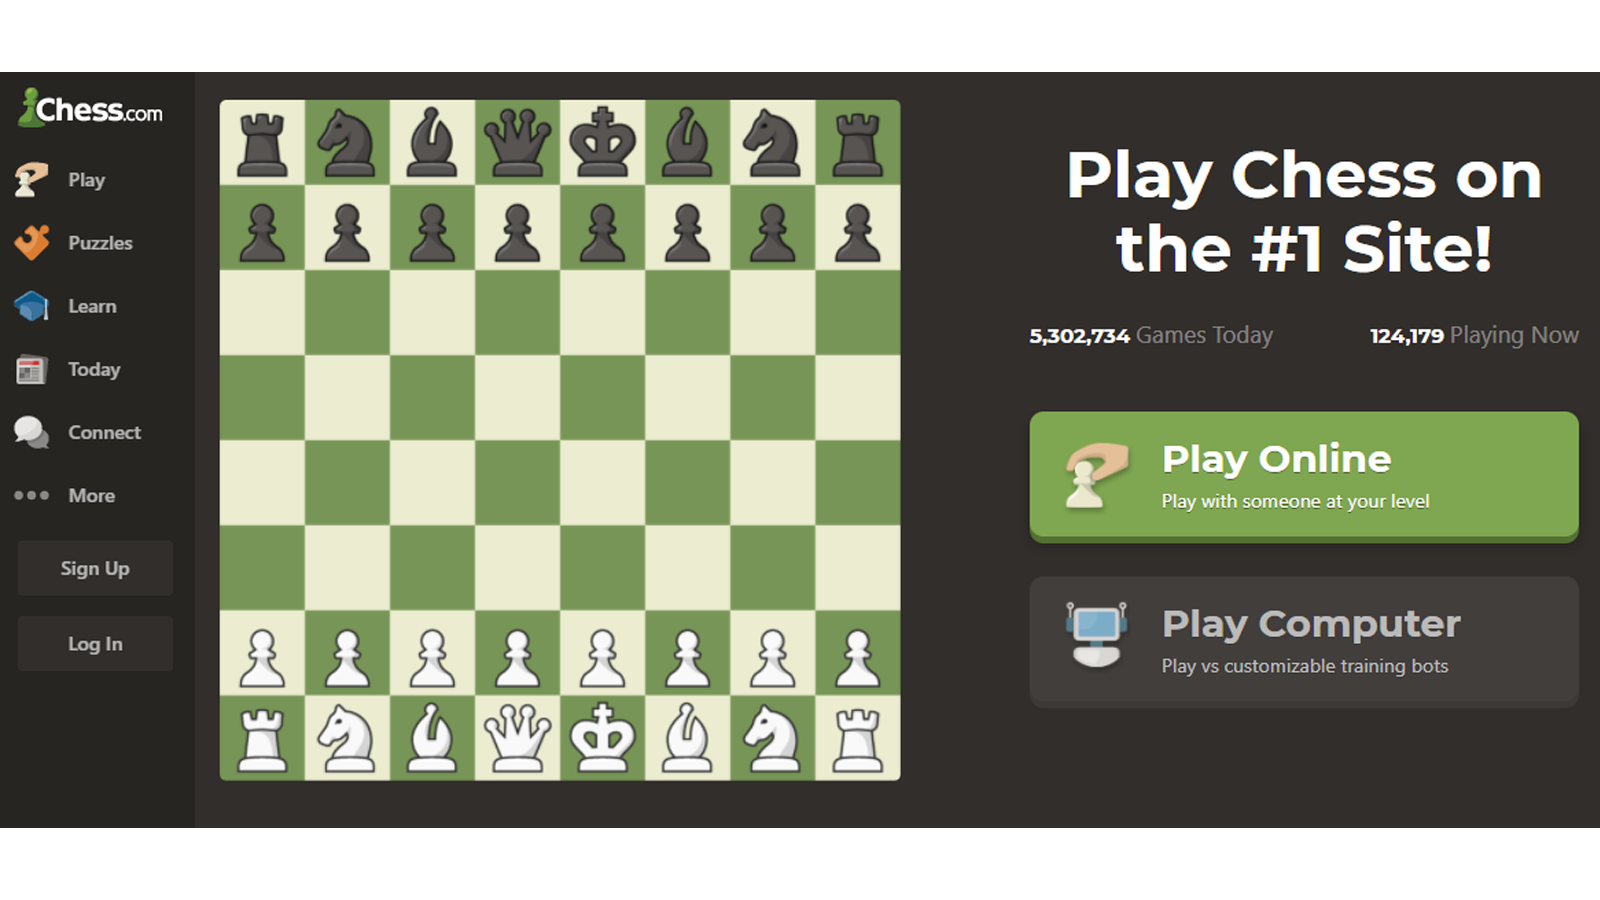 beranda chess.com dengan opsi untuk memainkan game atau mendaftar